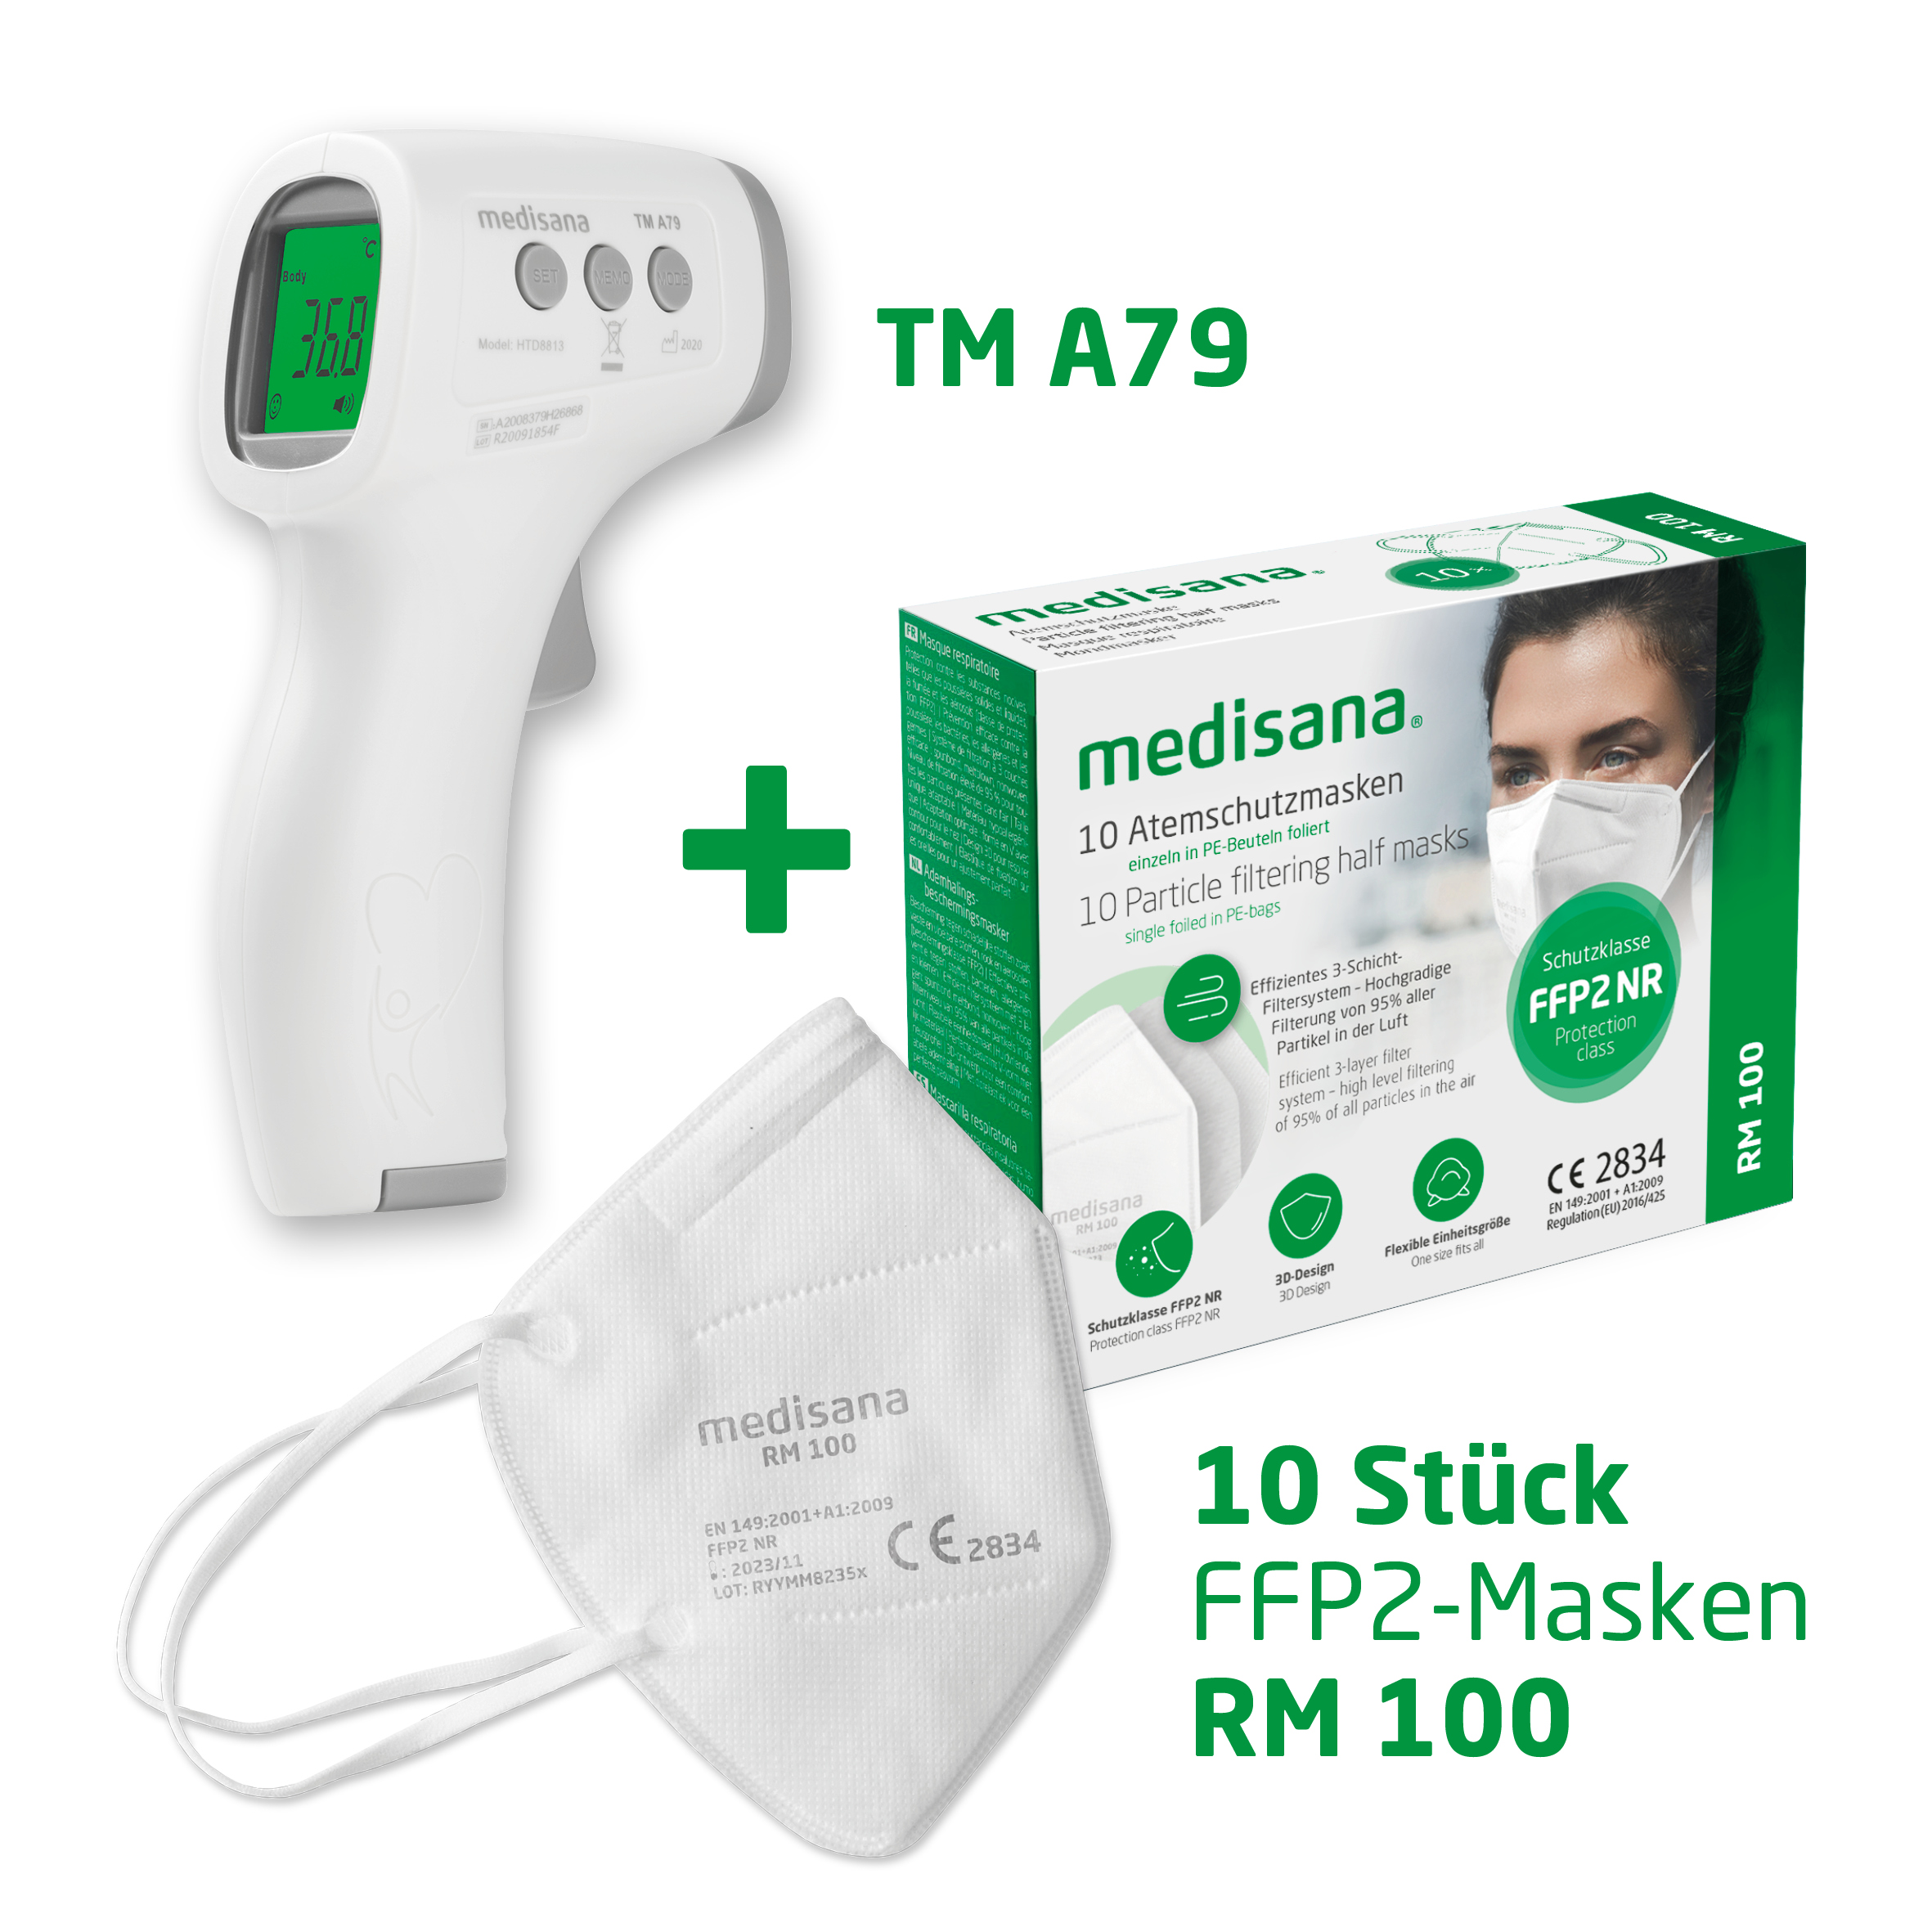 TM A79 + RM 100 medisana®